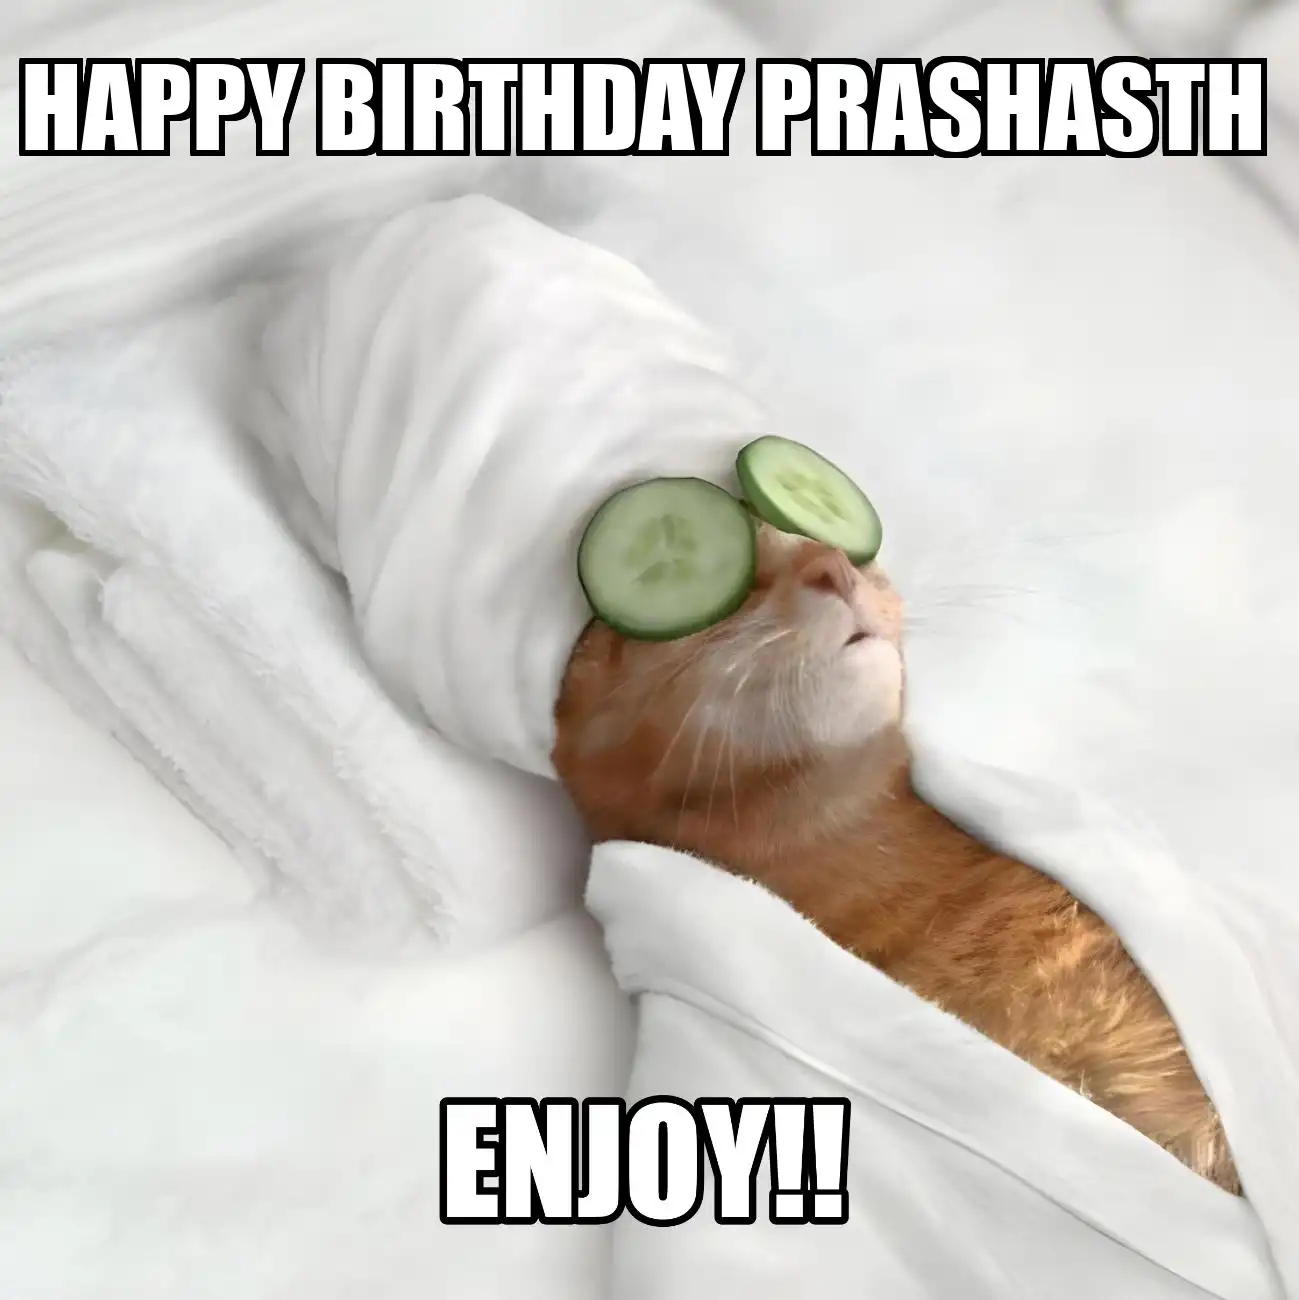 Happy Birthday Prashasth Enjoy Cat Meme